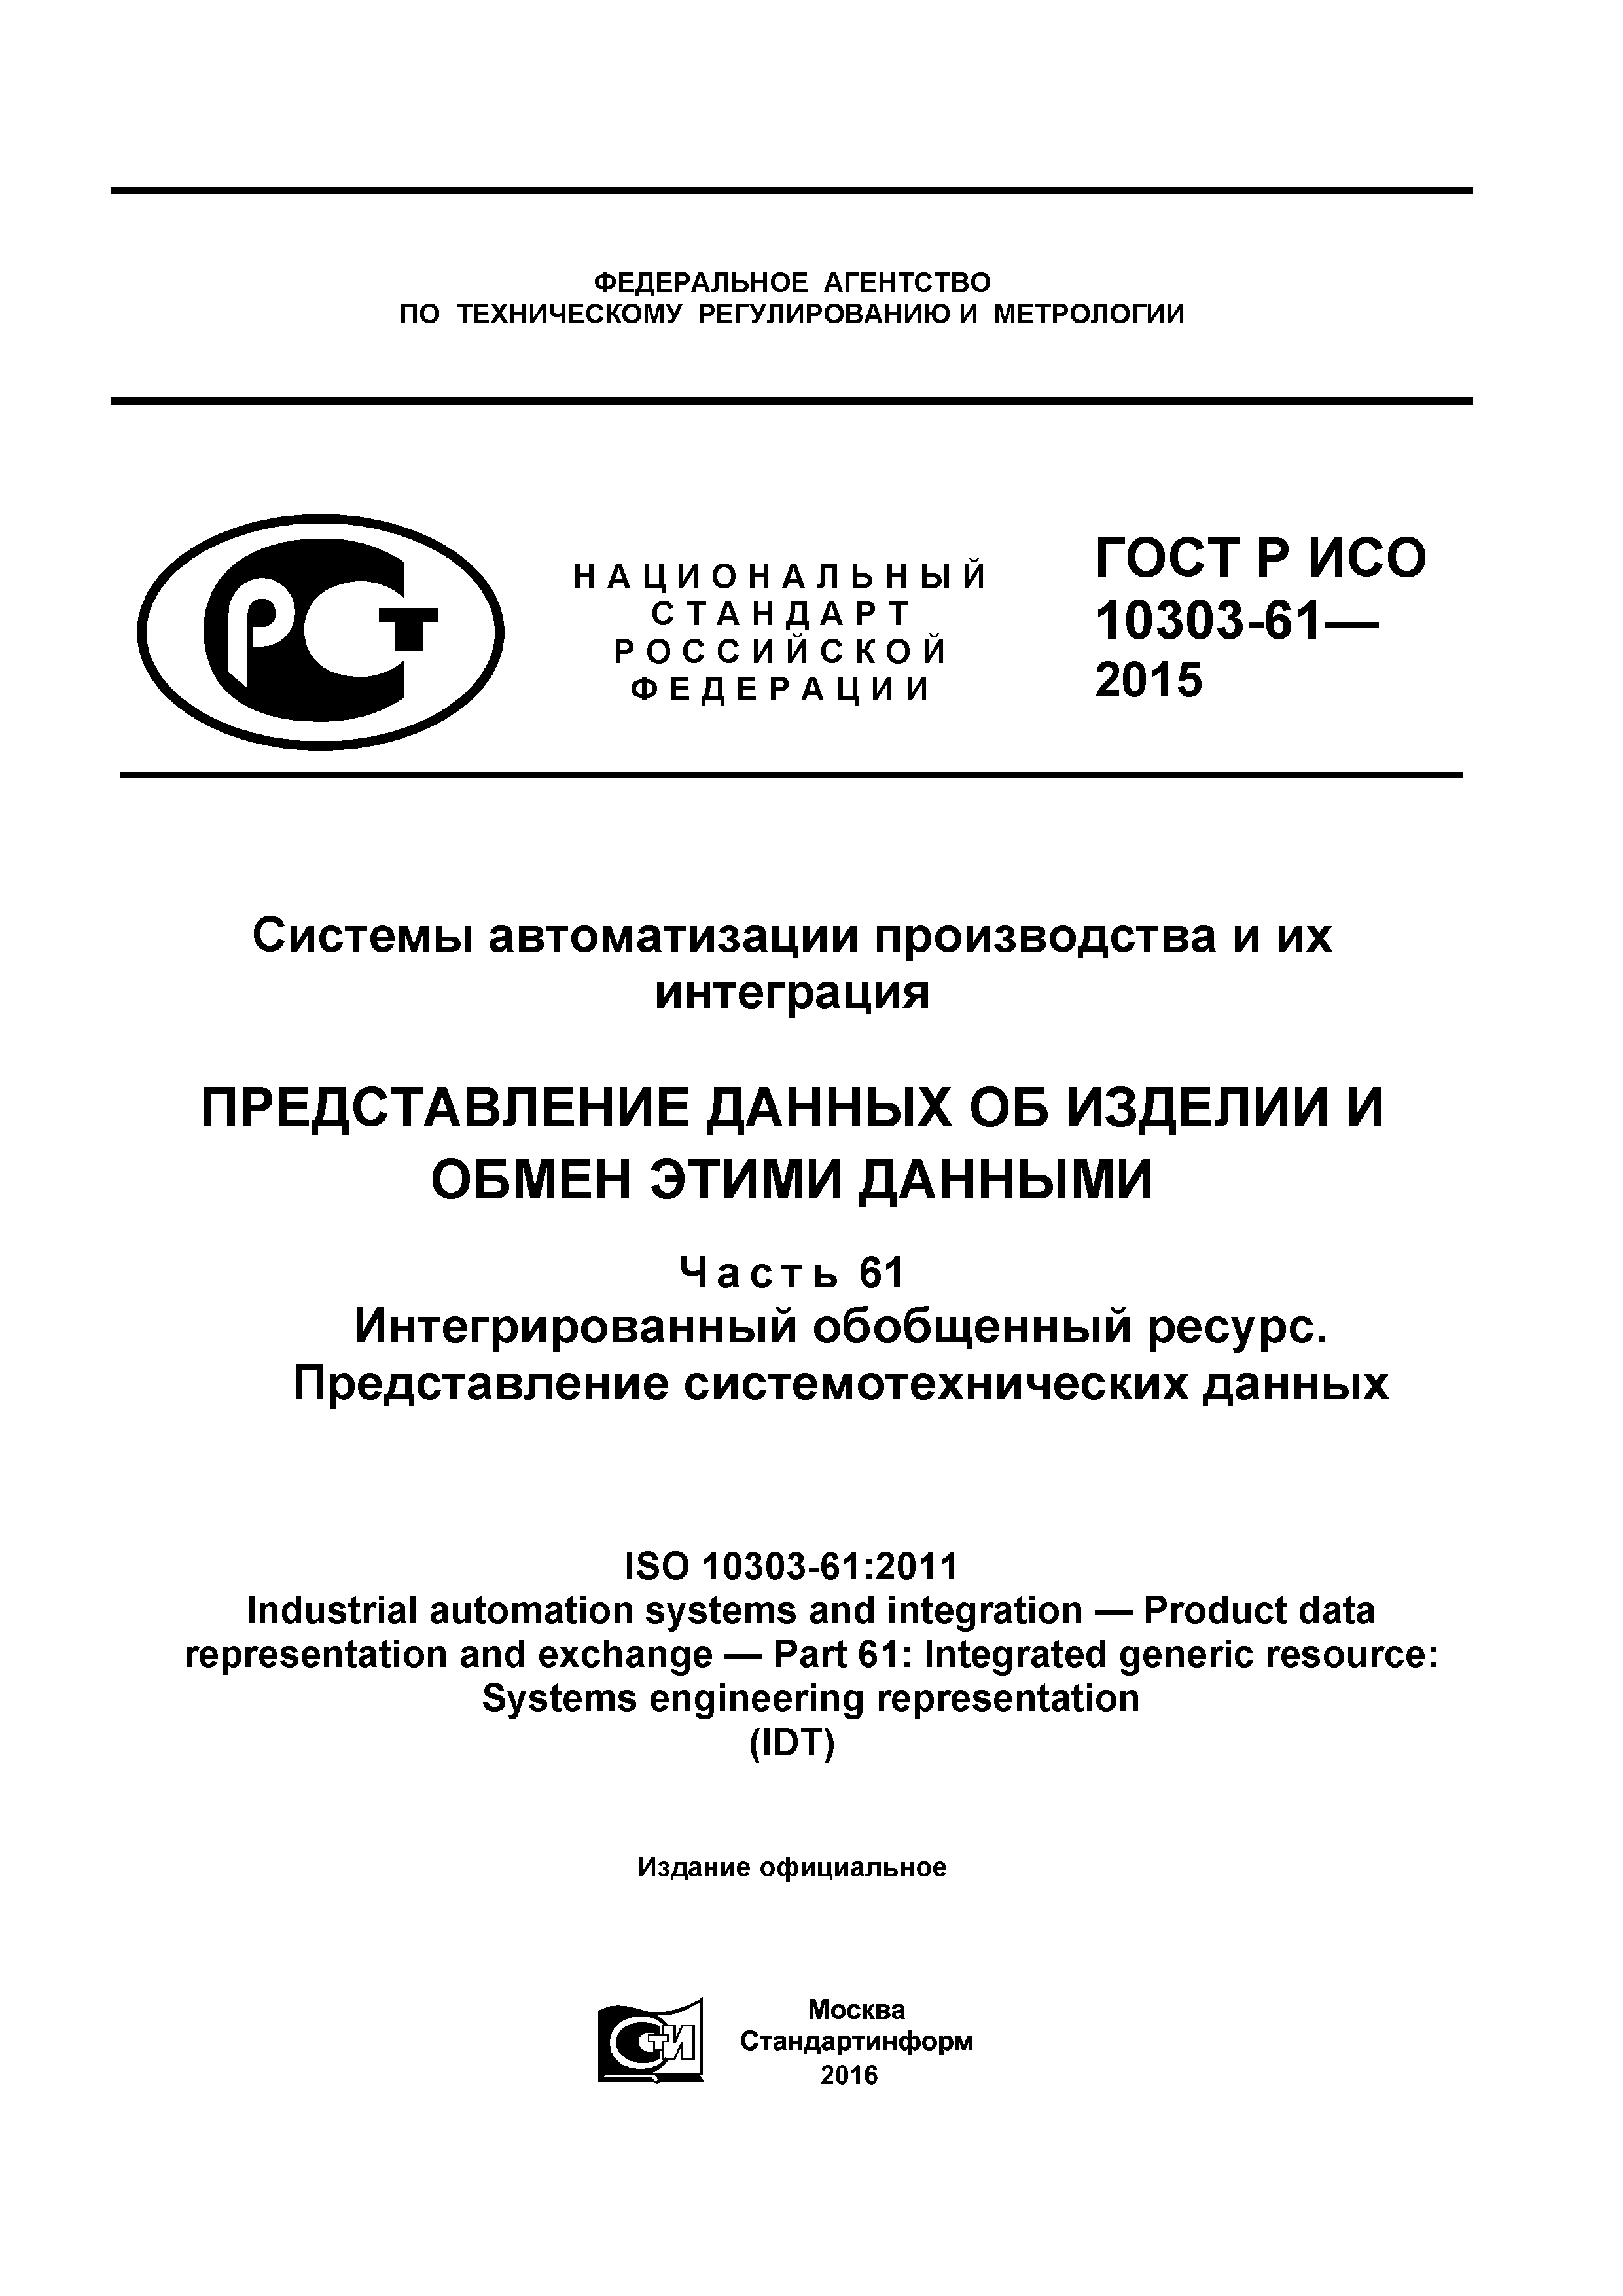 ГОСТ Р ИСО 10303-61-2015